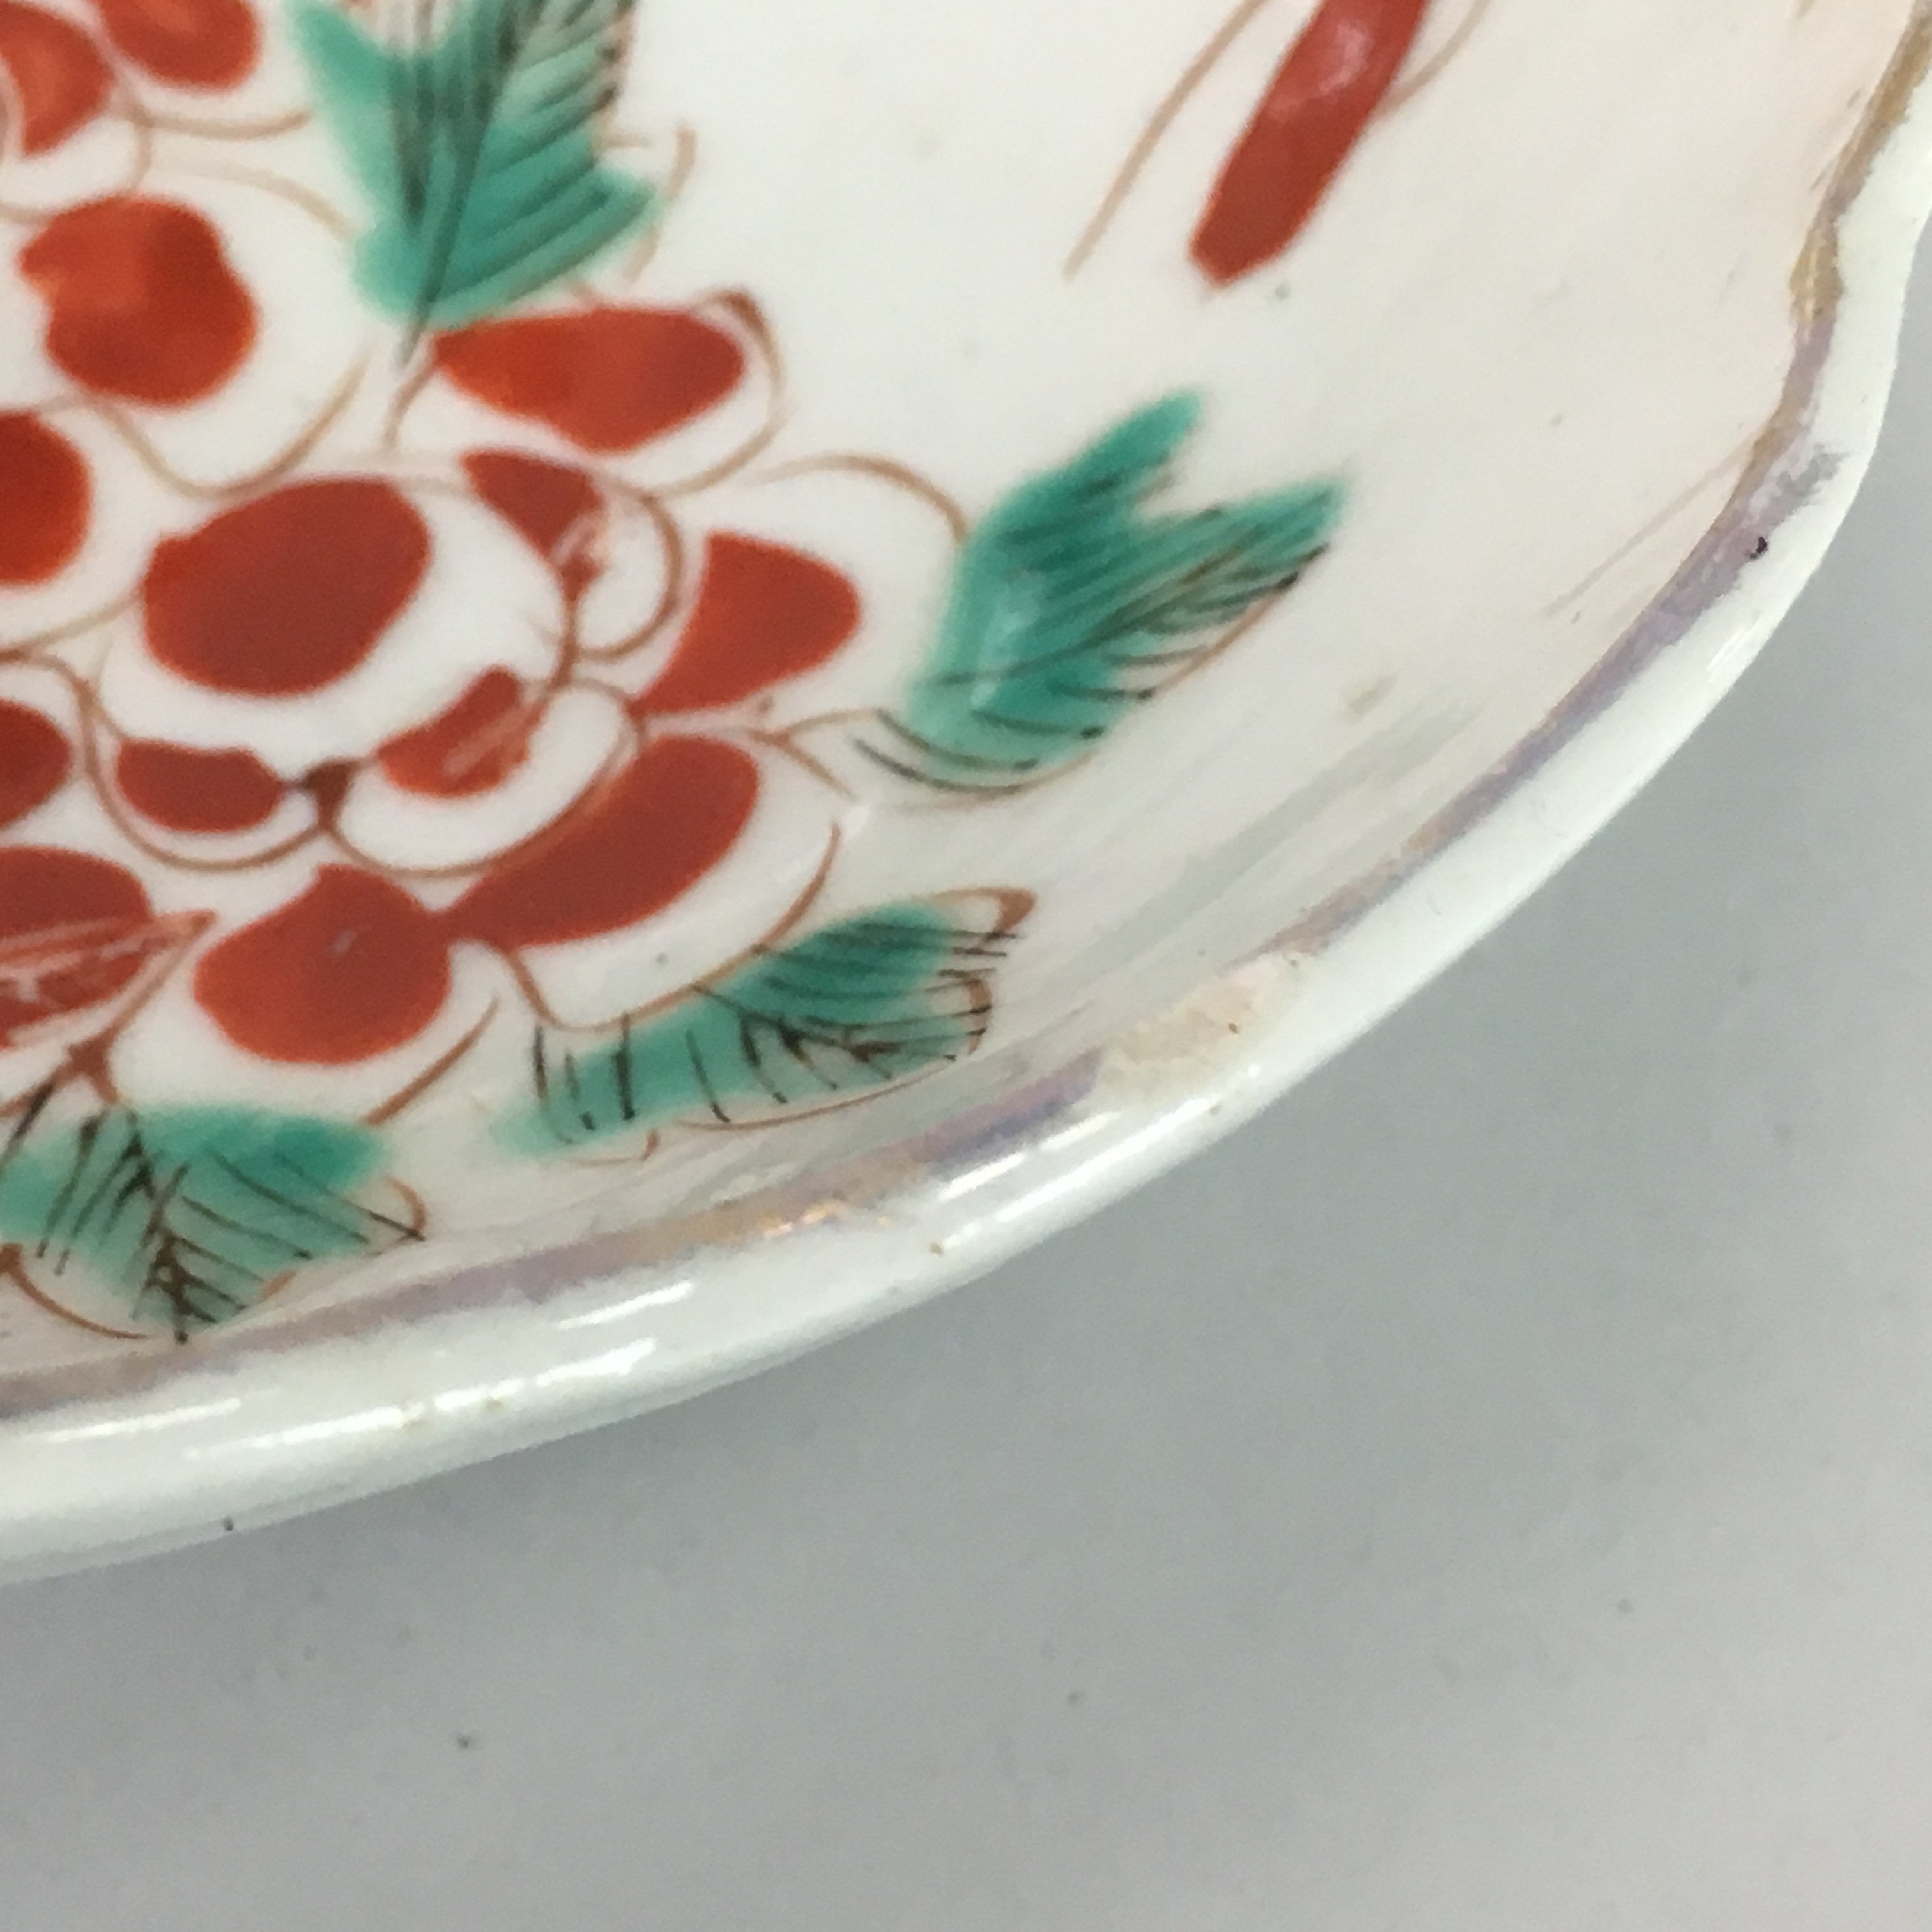 Japanese Porcelain Bowl Vtg Kobachi C1930 Floral Butterfly Design PT409